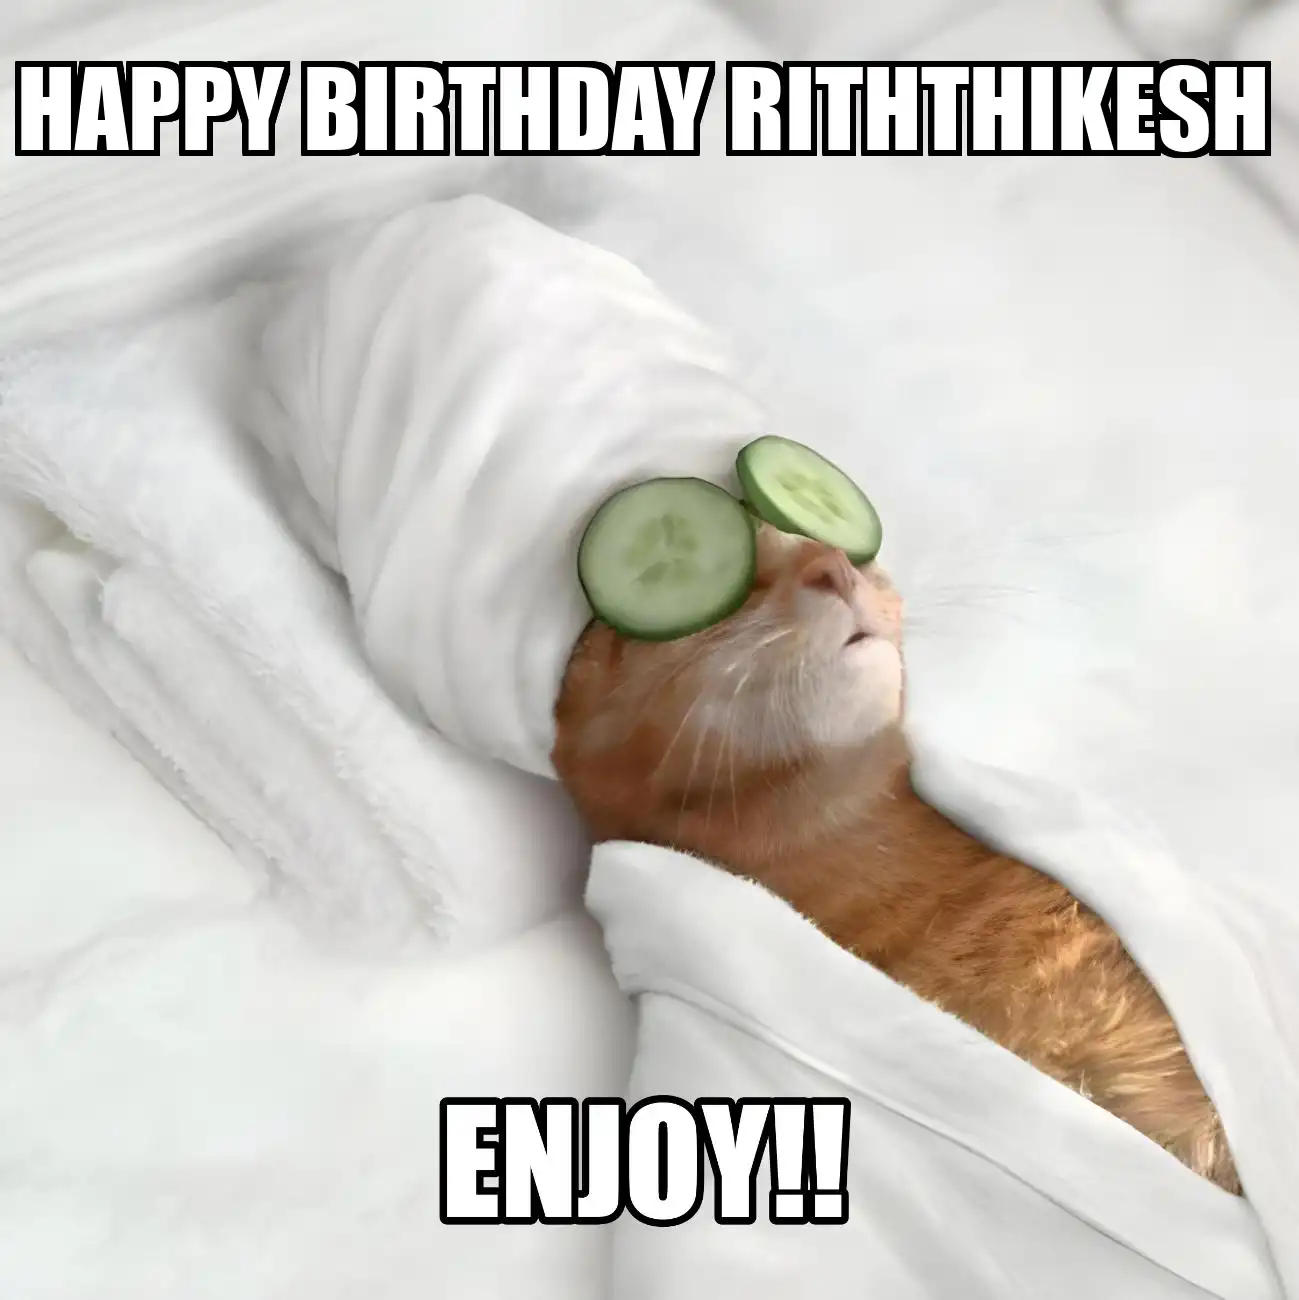 Happy Birthday Riththikesh Enjoy Cat Meme